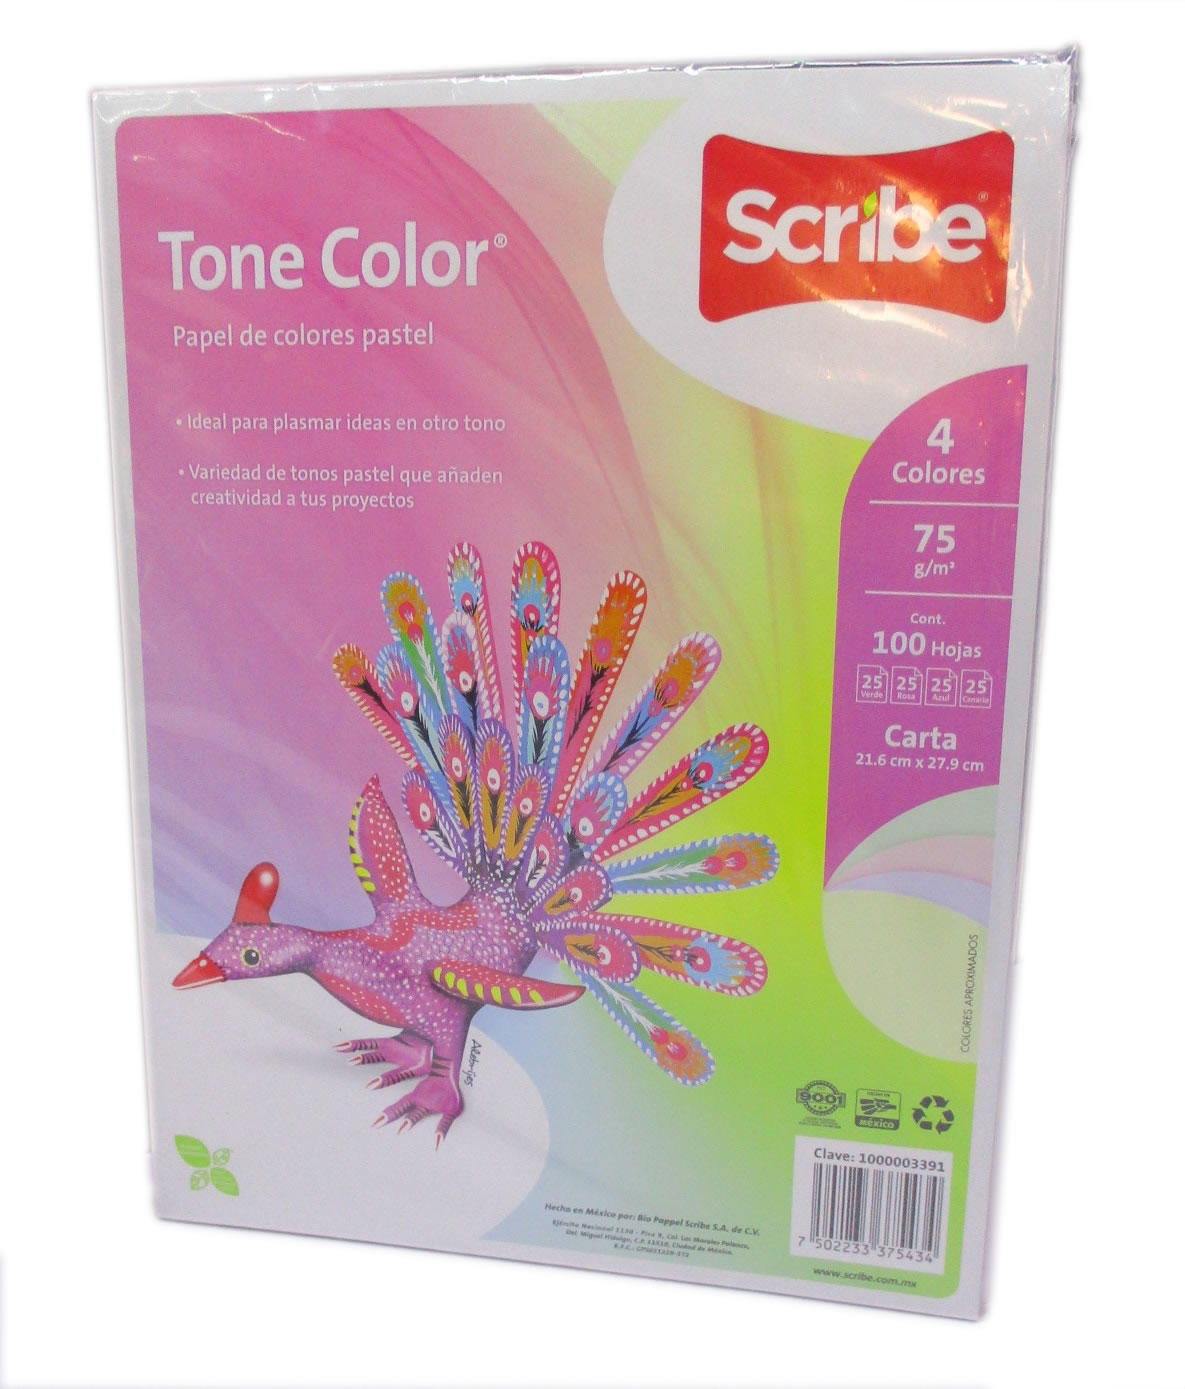 Tone color scribe 100 hojas mix Papel de color mix pastel 75g paquete de 100 hojas. Scribe tone color. Cumple: NOM-050-DCFI-2004 y NOM-144 - 1000003391